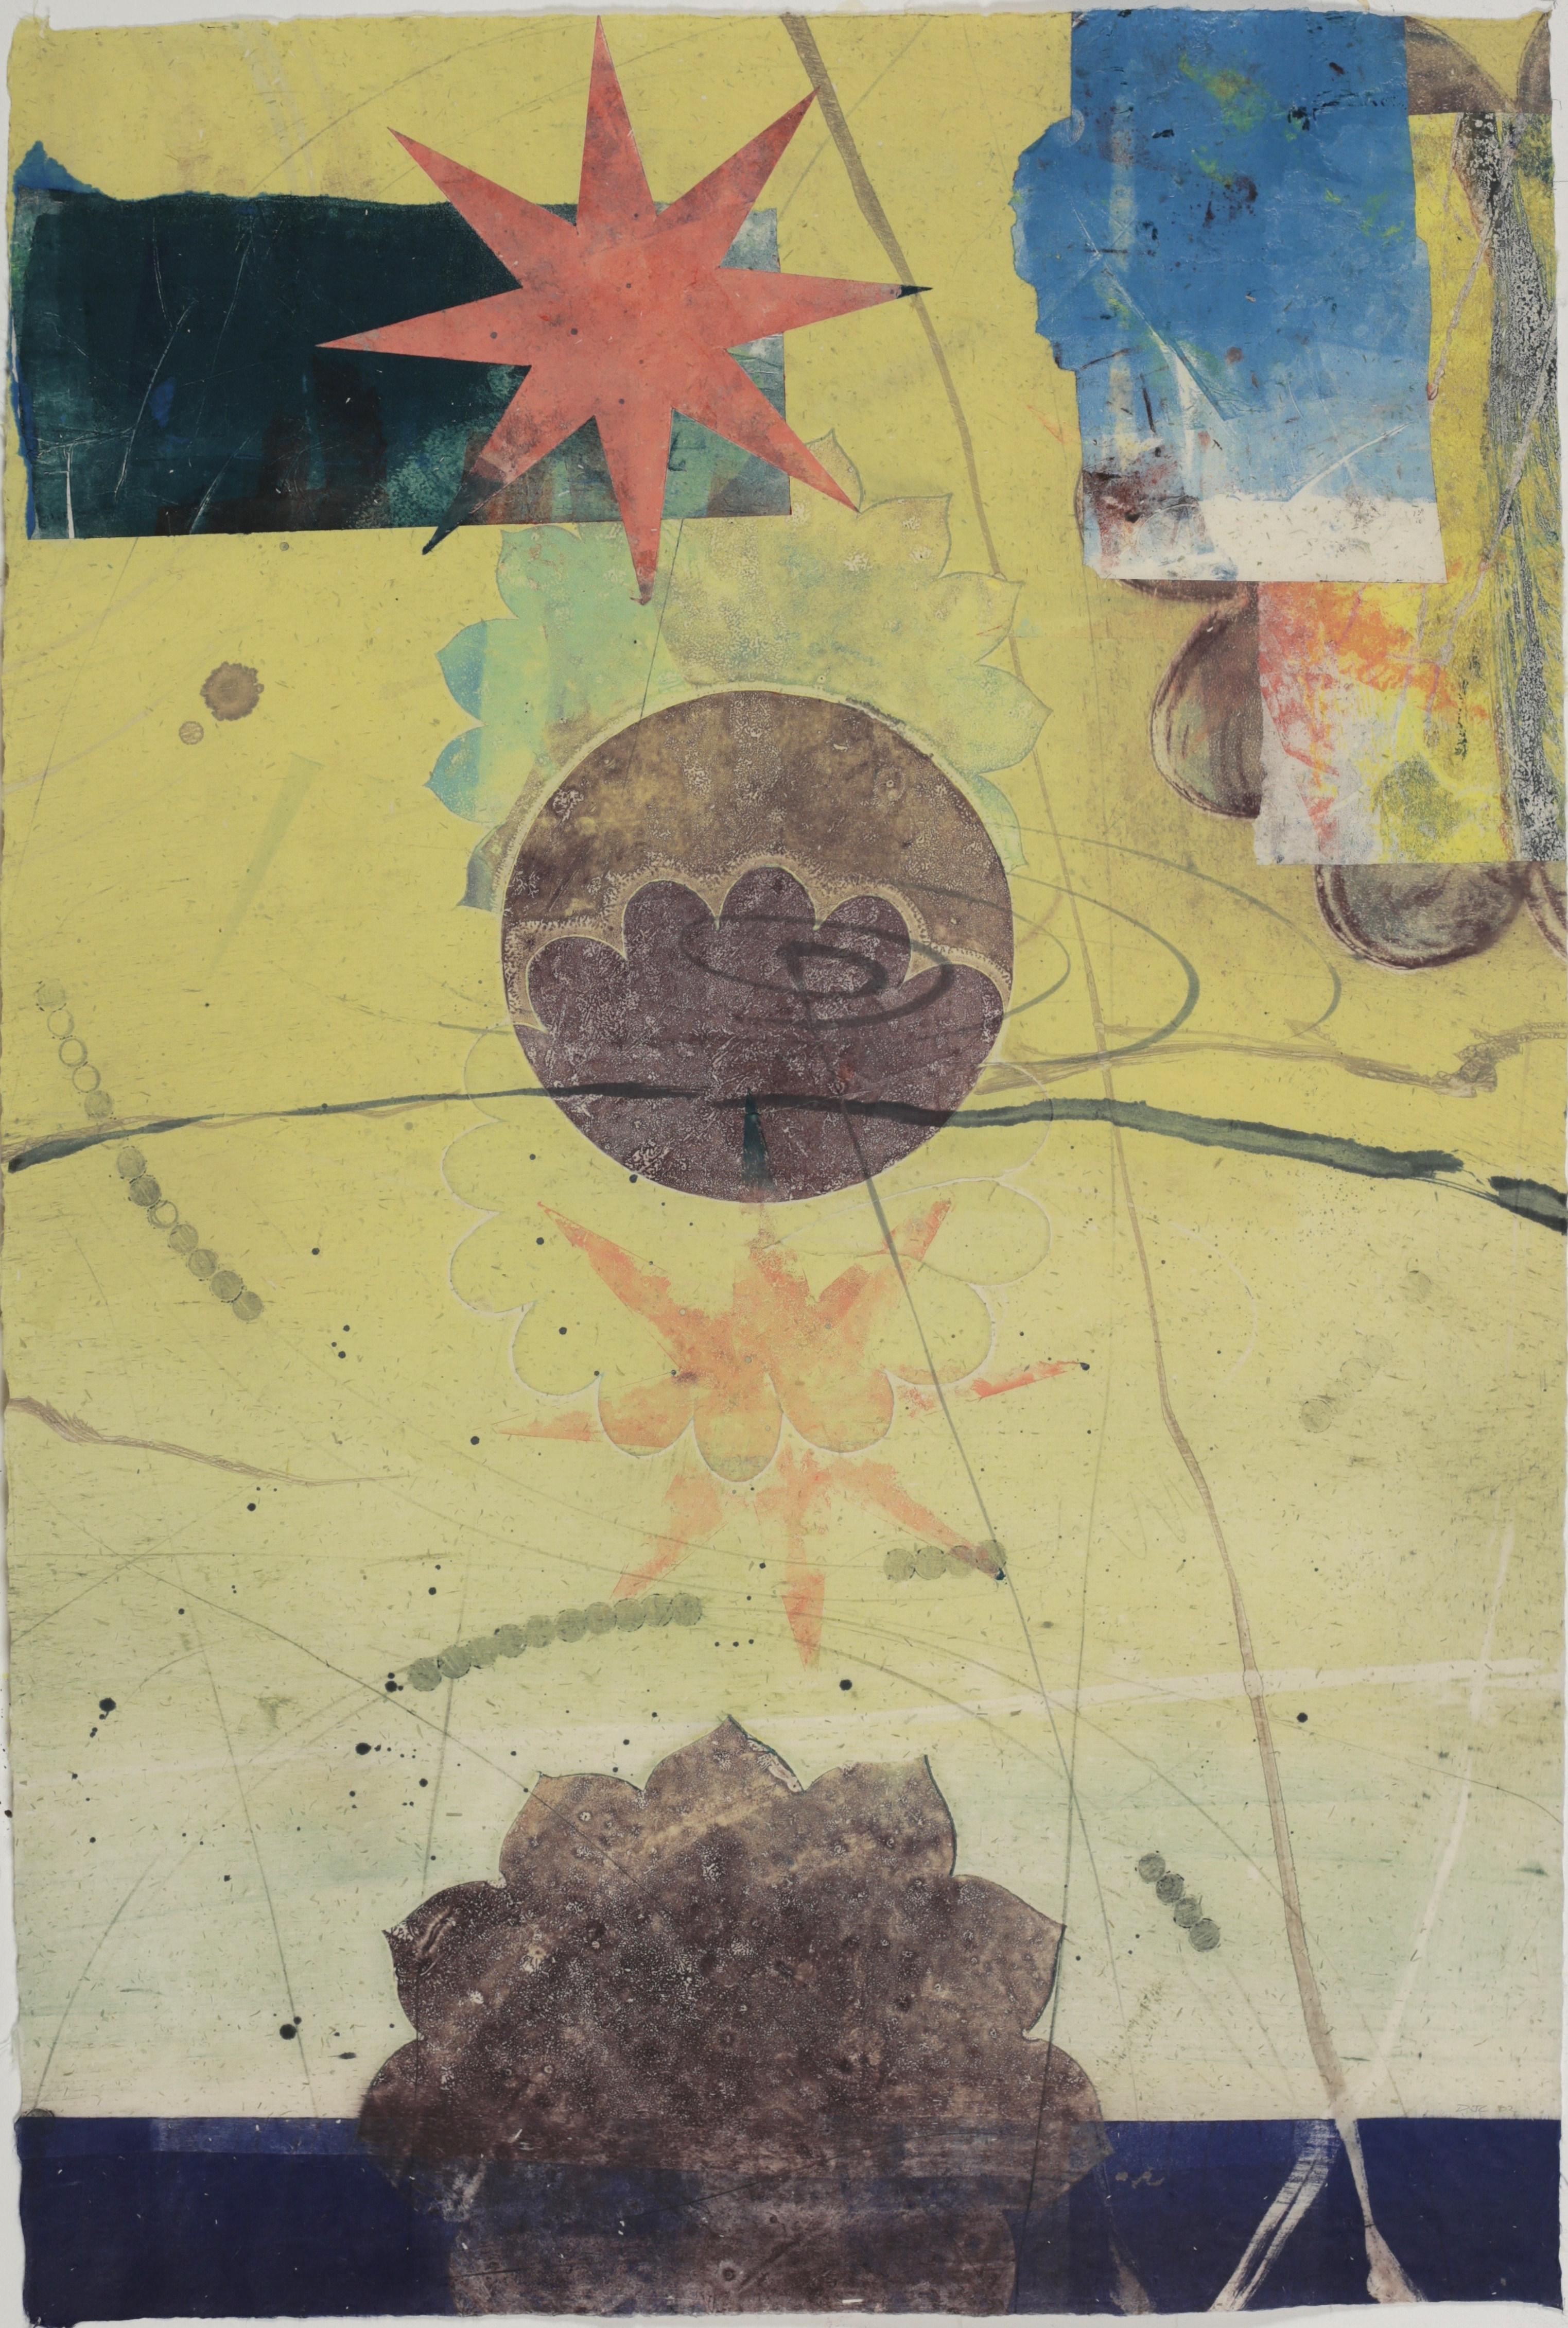 Abstract Print David Collins - Pilot 35, jaune, bleu, étoile corail, cercle, fleur, monotype abstrait vertical